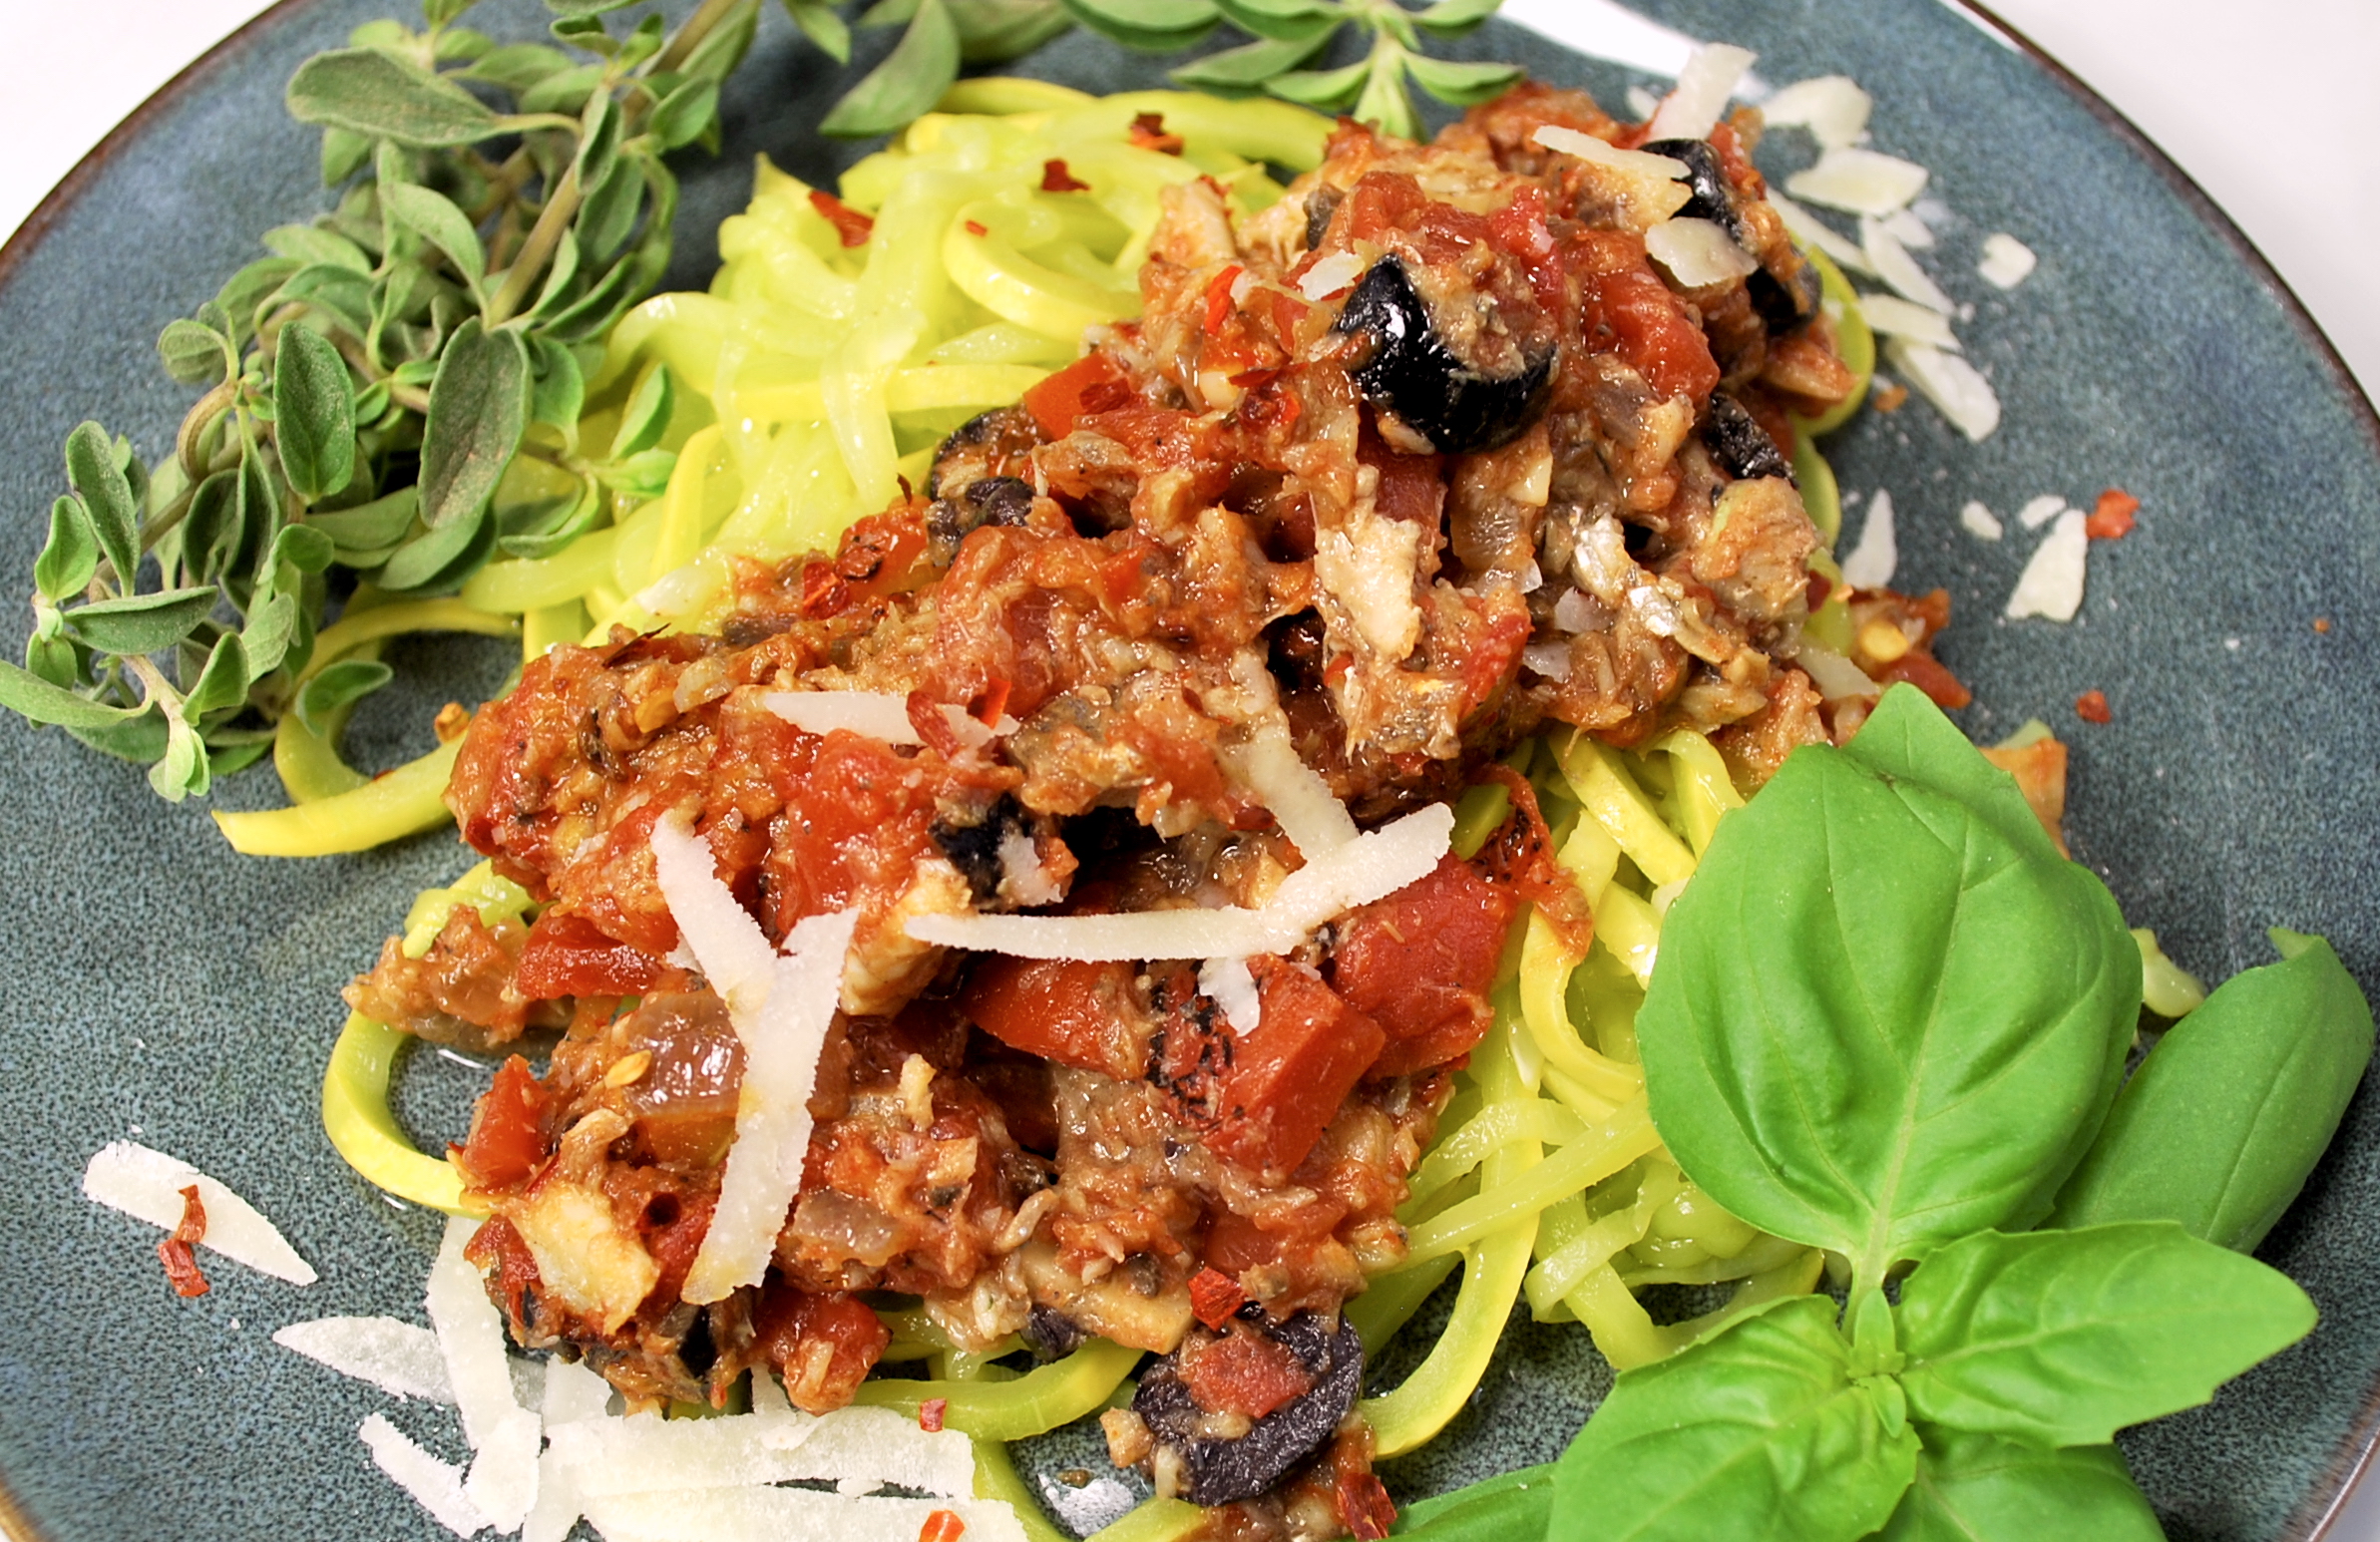 spiralizing recipes - pasta puttanesca